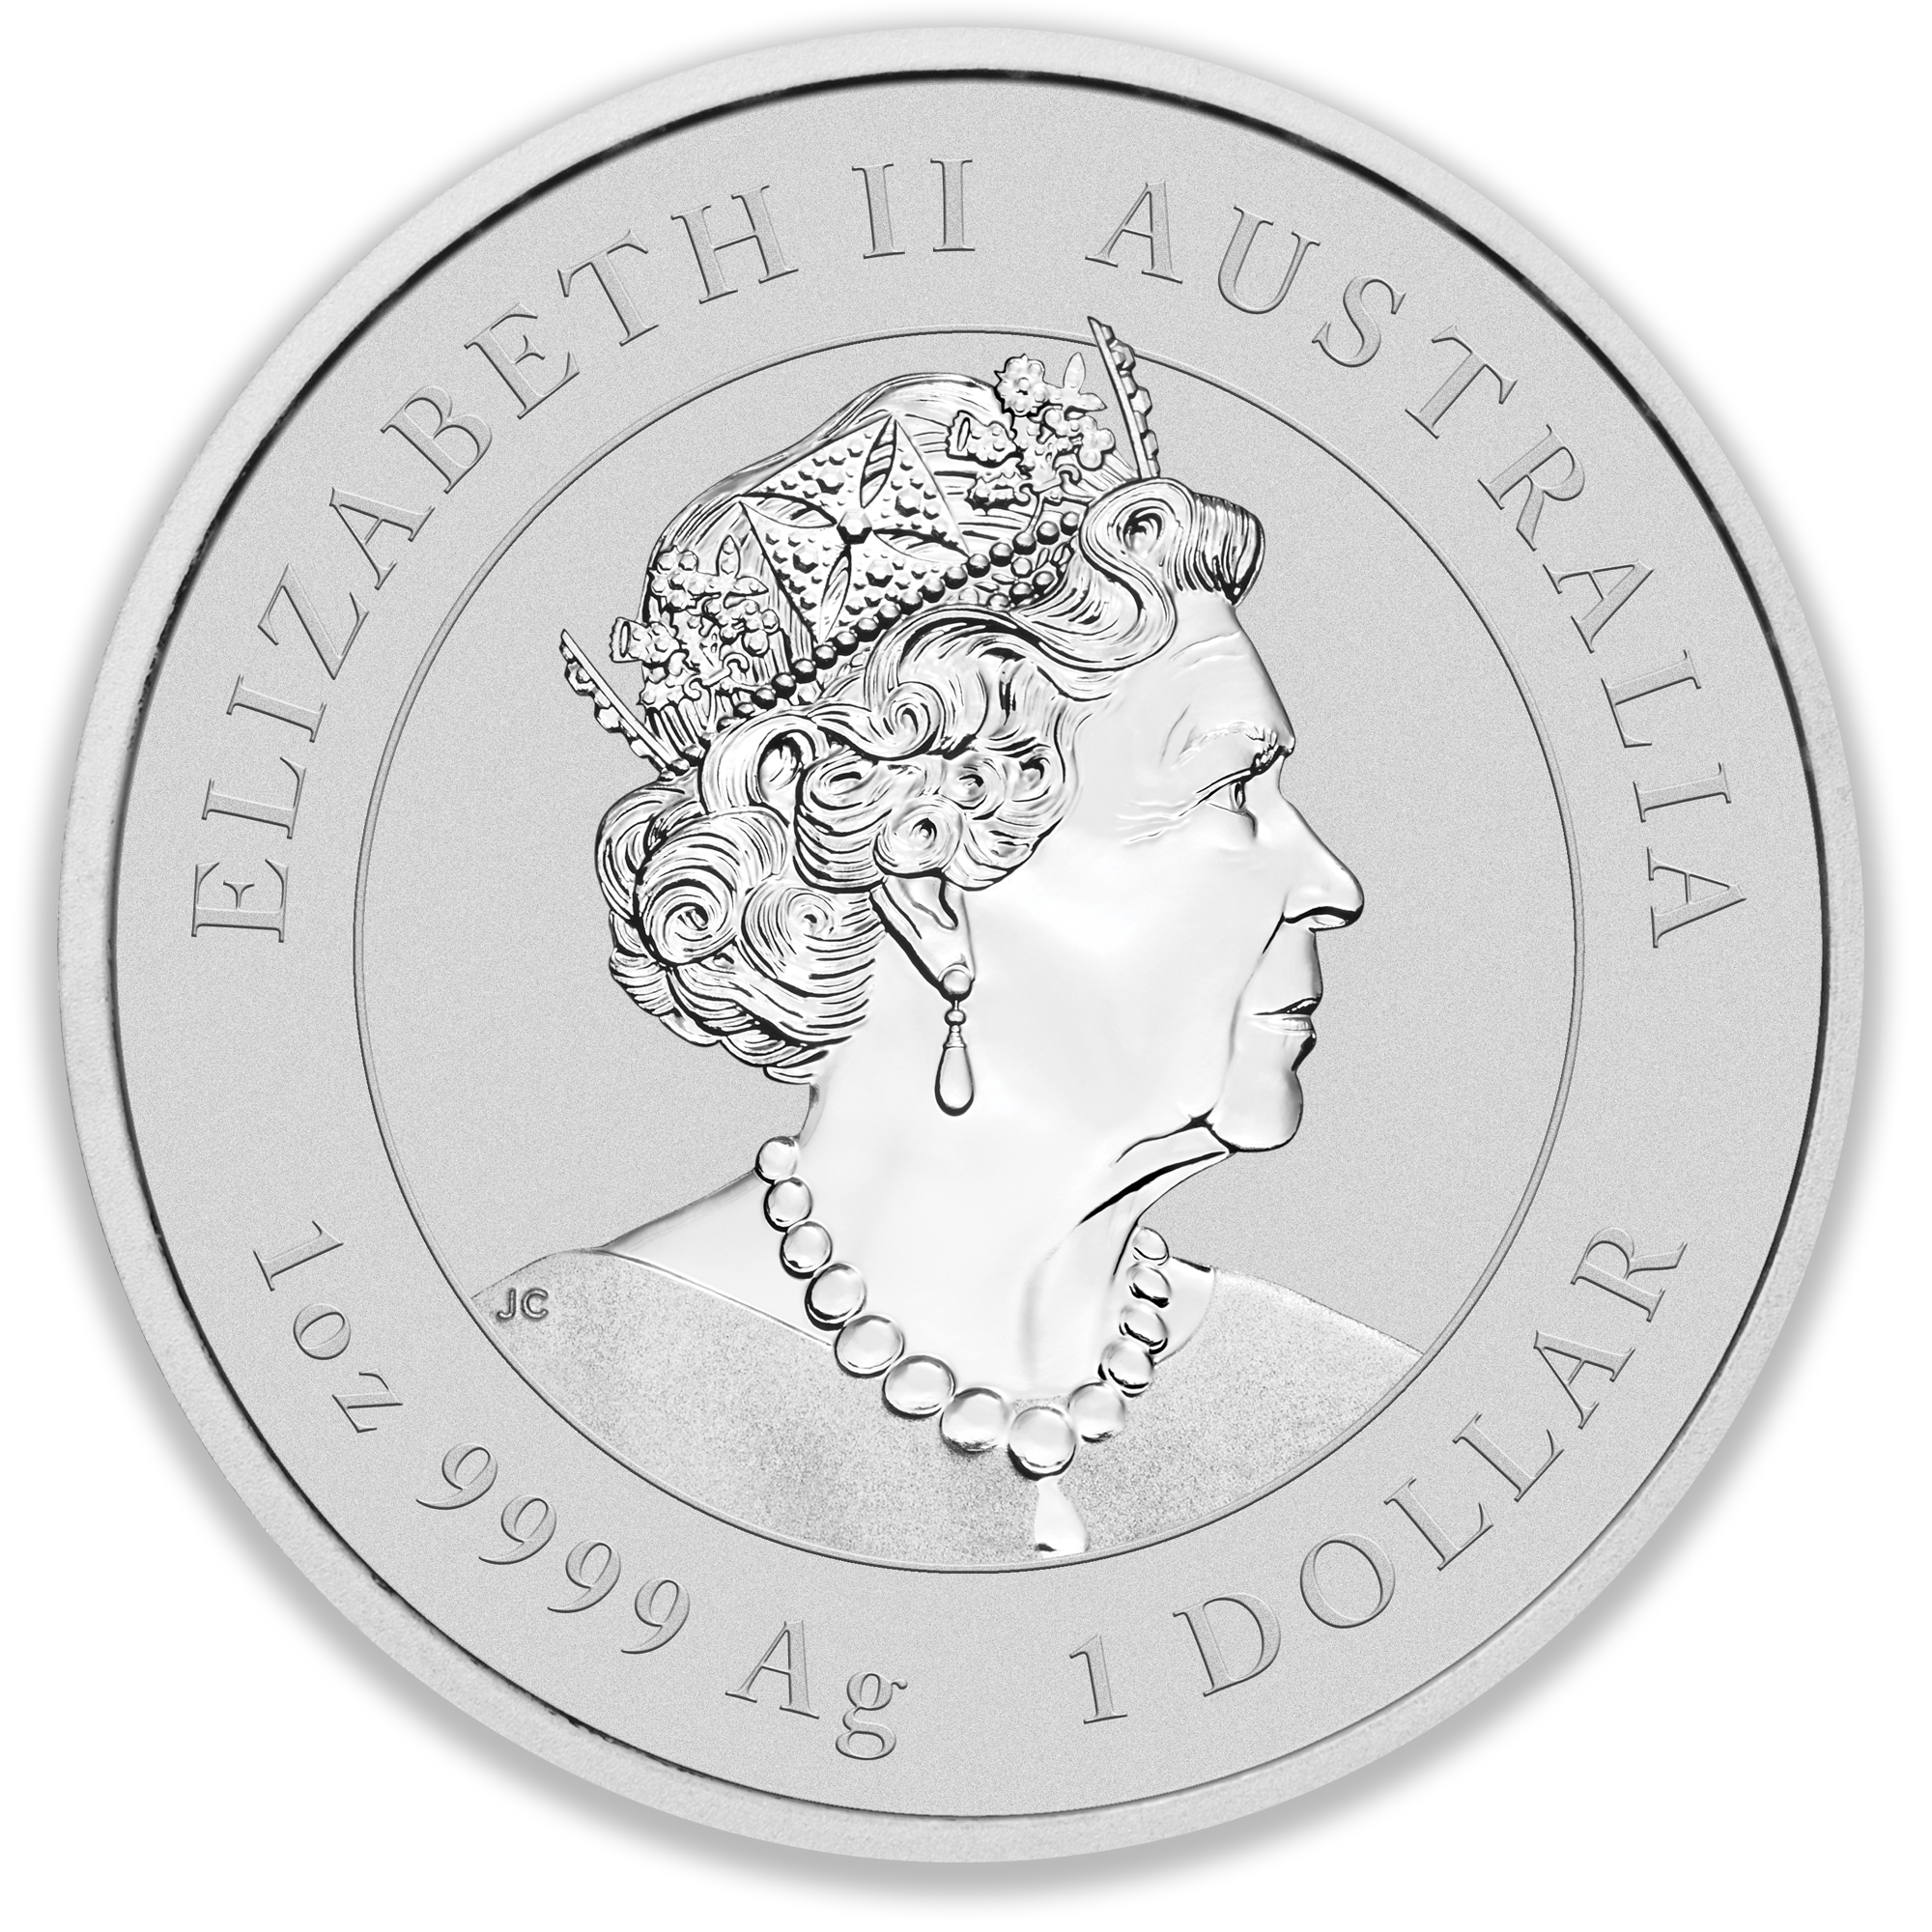 2020 1oz Perth Mint Silver Lunar Mouse Coin Series 3